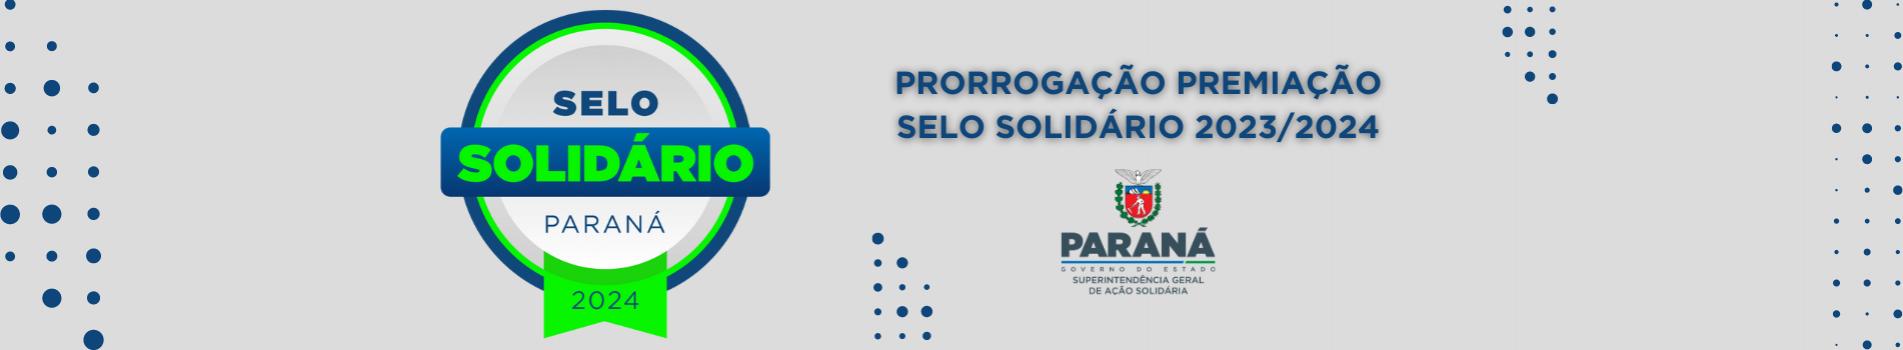 prorrogação premiação selo solidário 2023/2024 com a logo do selo e da sgas